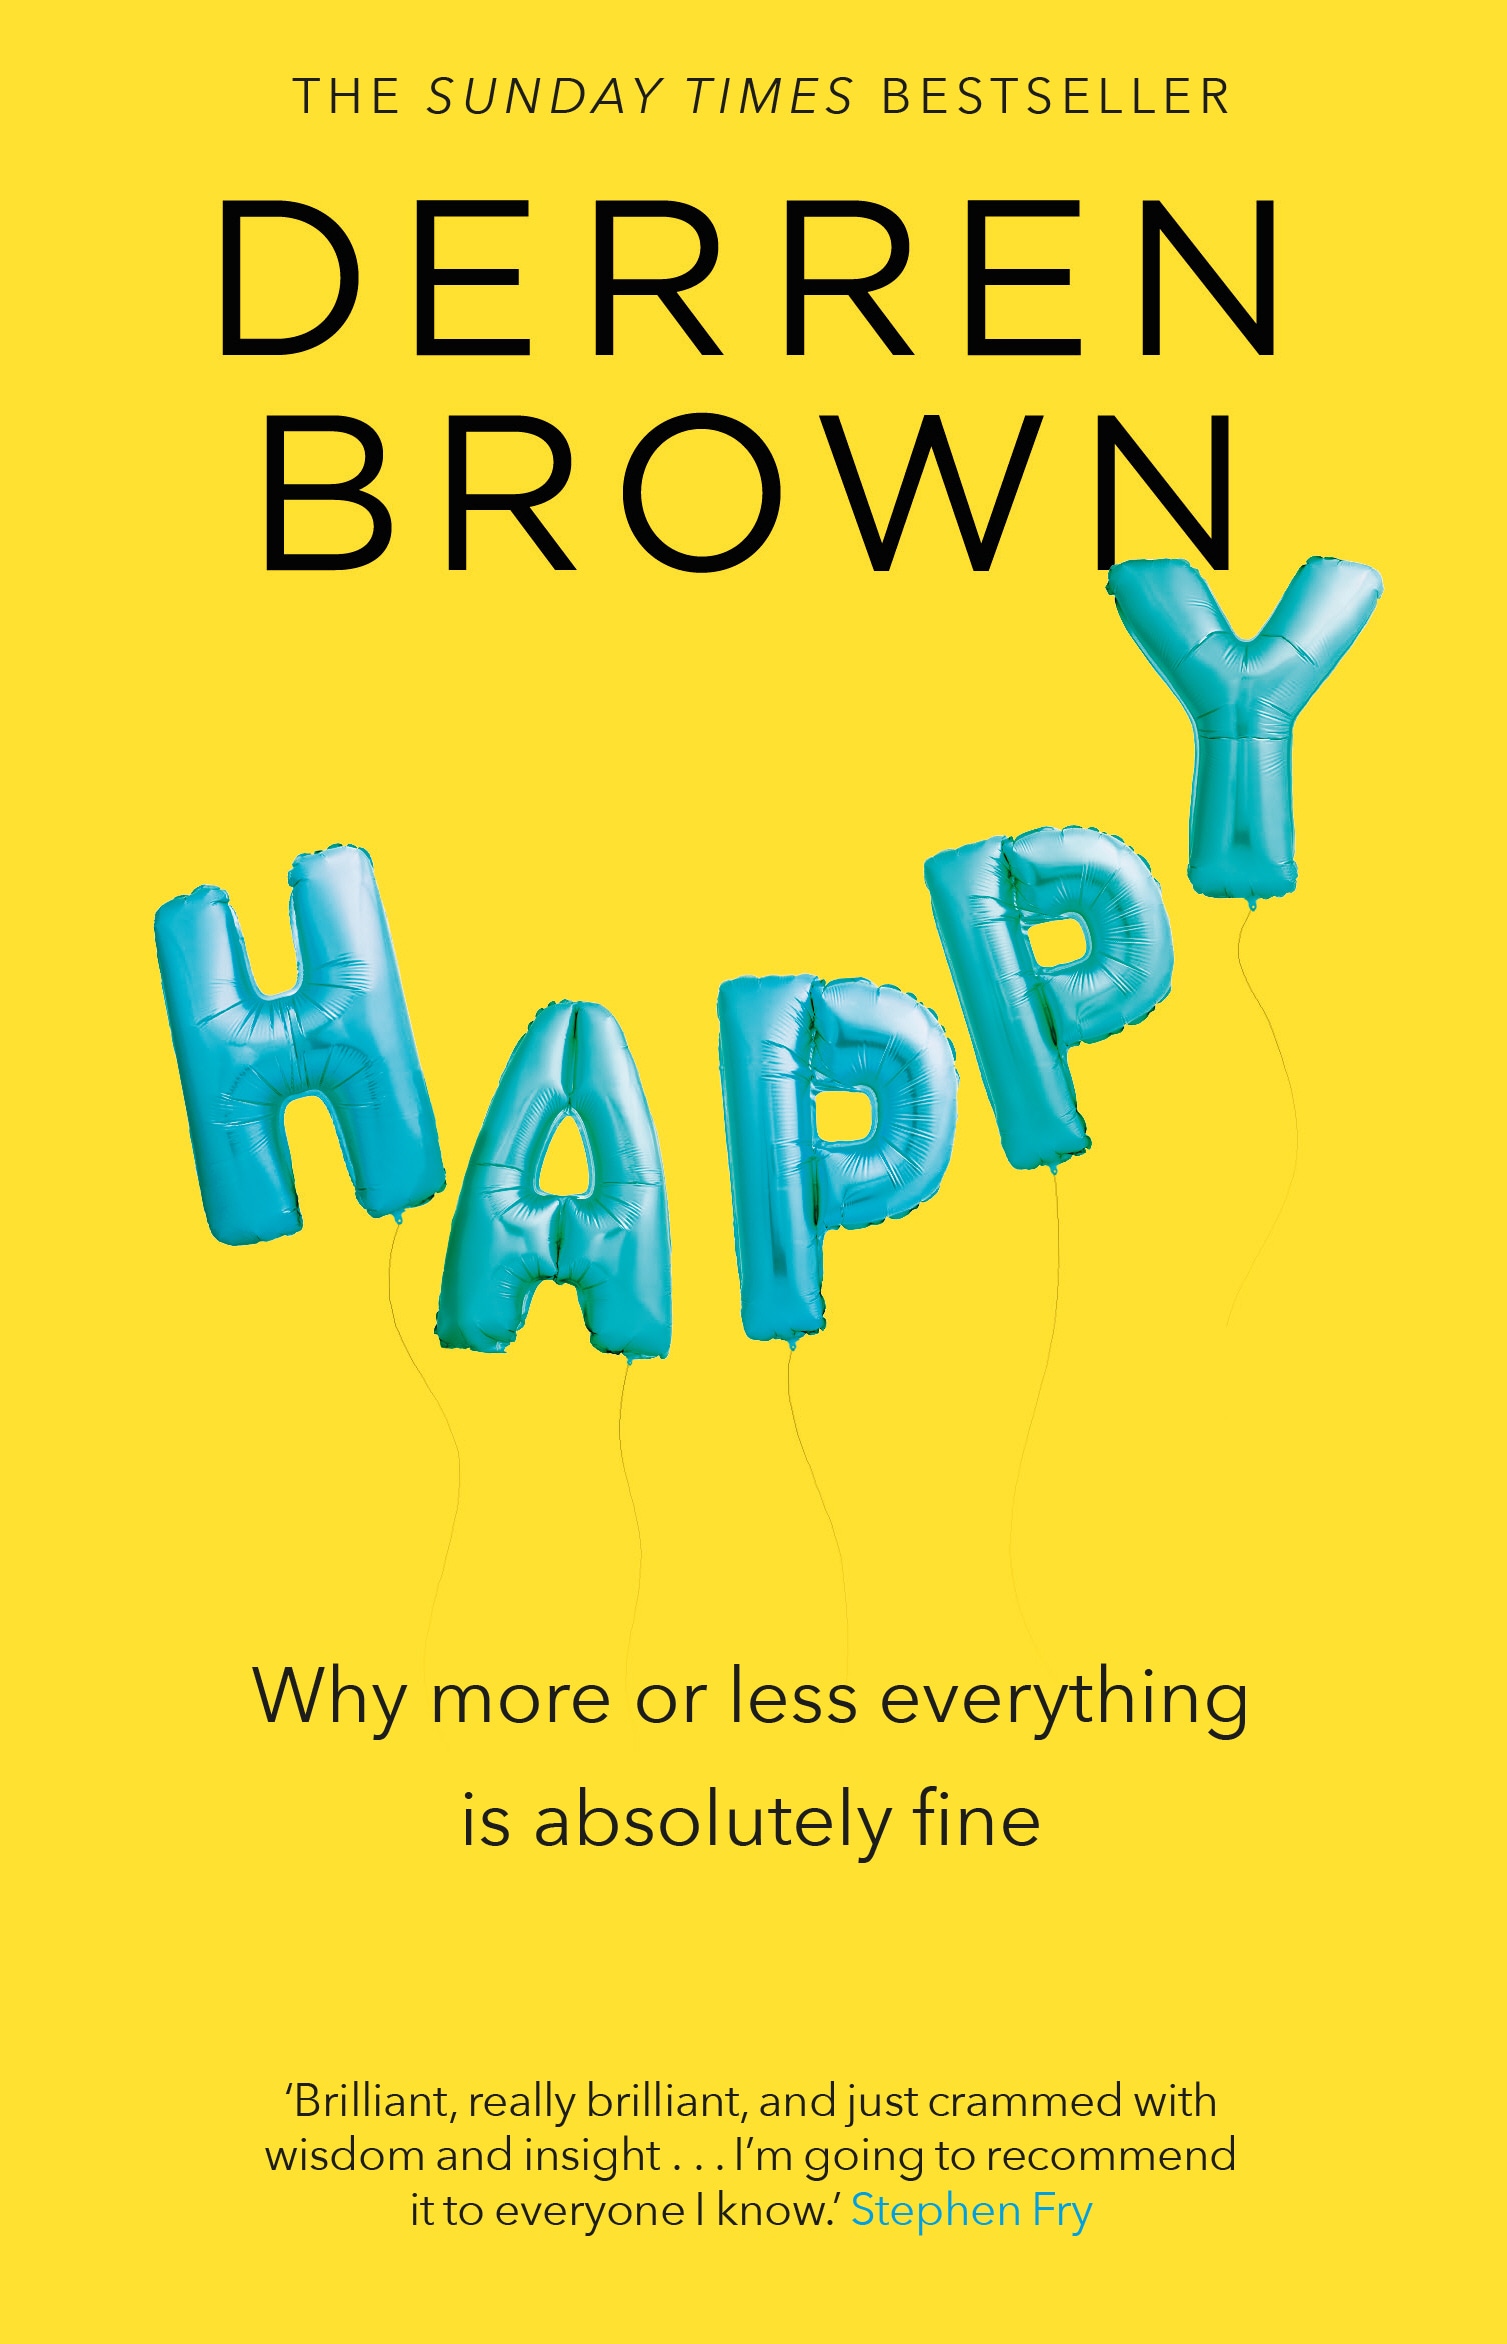 Book “Happy” by Derren Brown — June 29, 2017